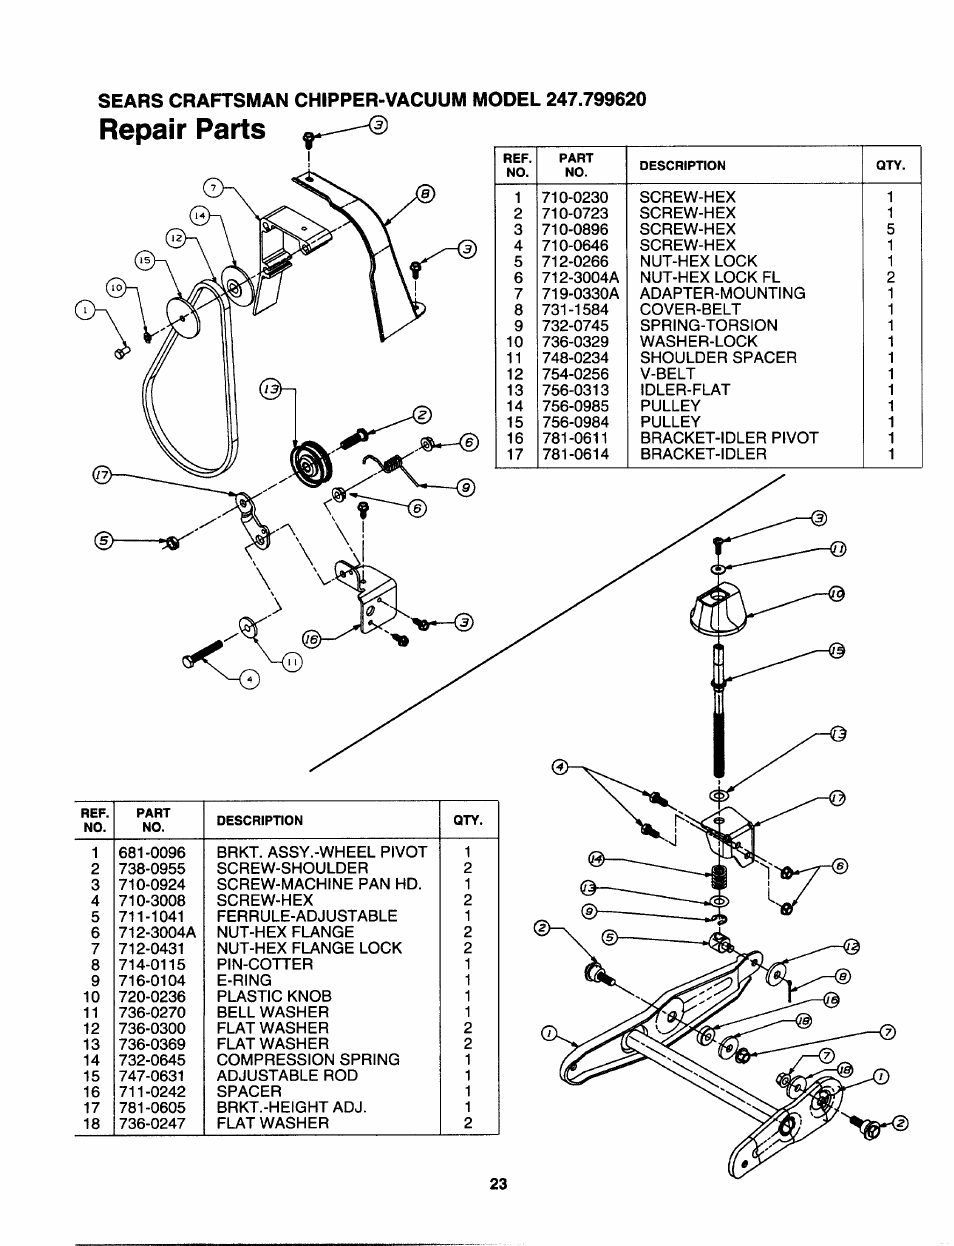 Repair parts | Craftsman 247.799620 User Manual | Page 23 / 52